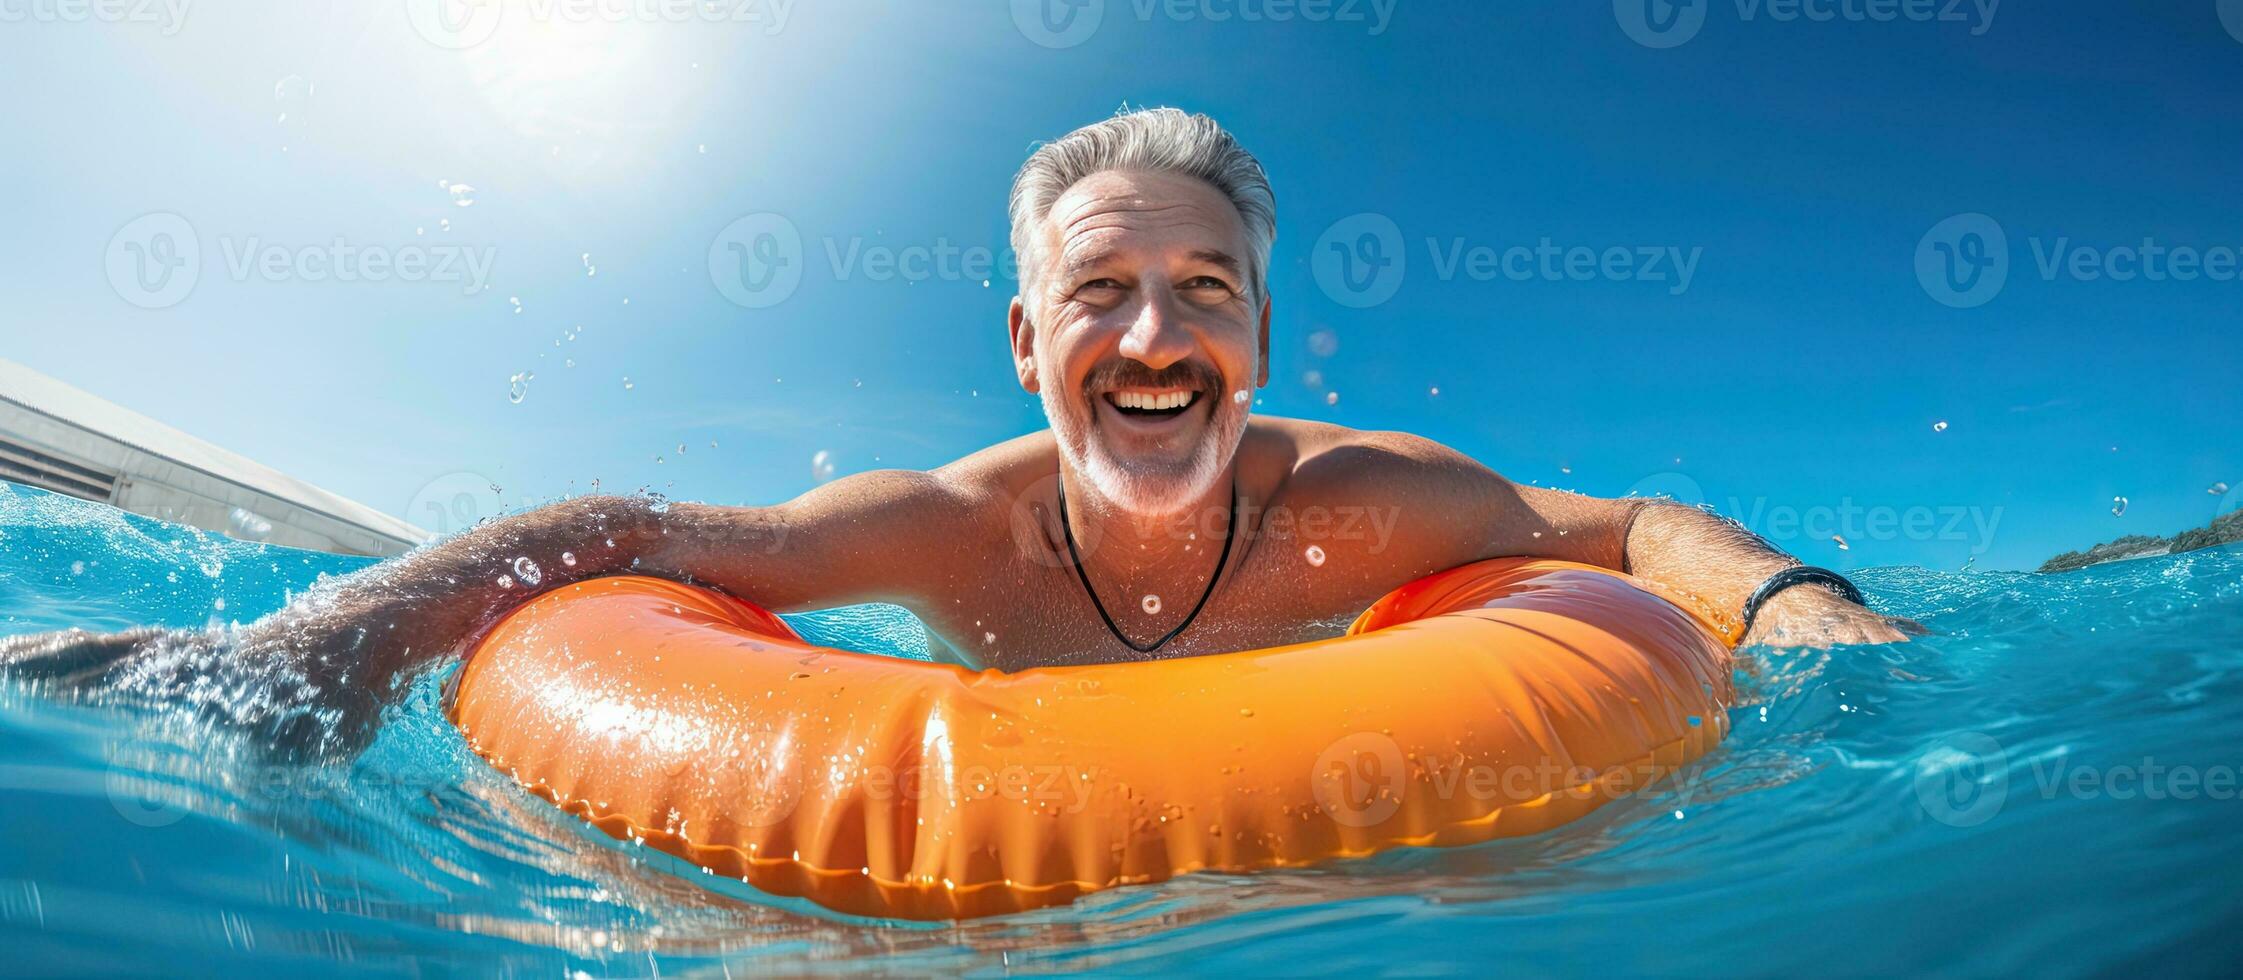 allegro uomo nel piscina con salvagente estate ricreazione di acqua nuoto piscina costruzione nel alberghi e case foto